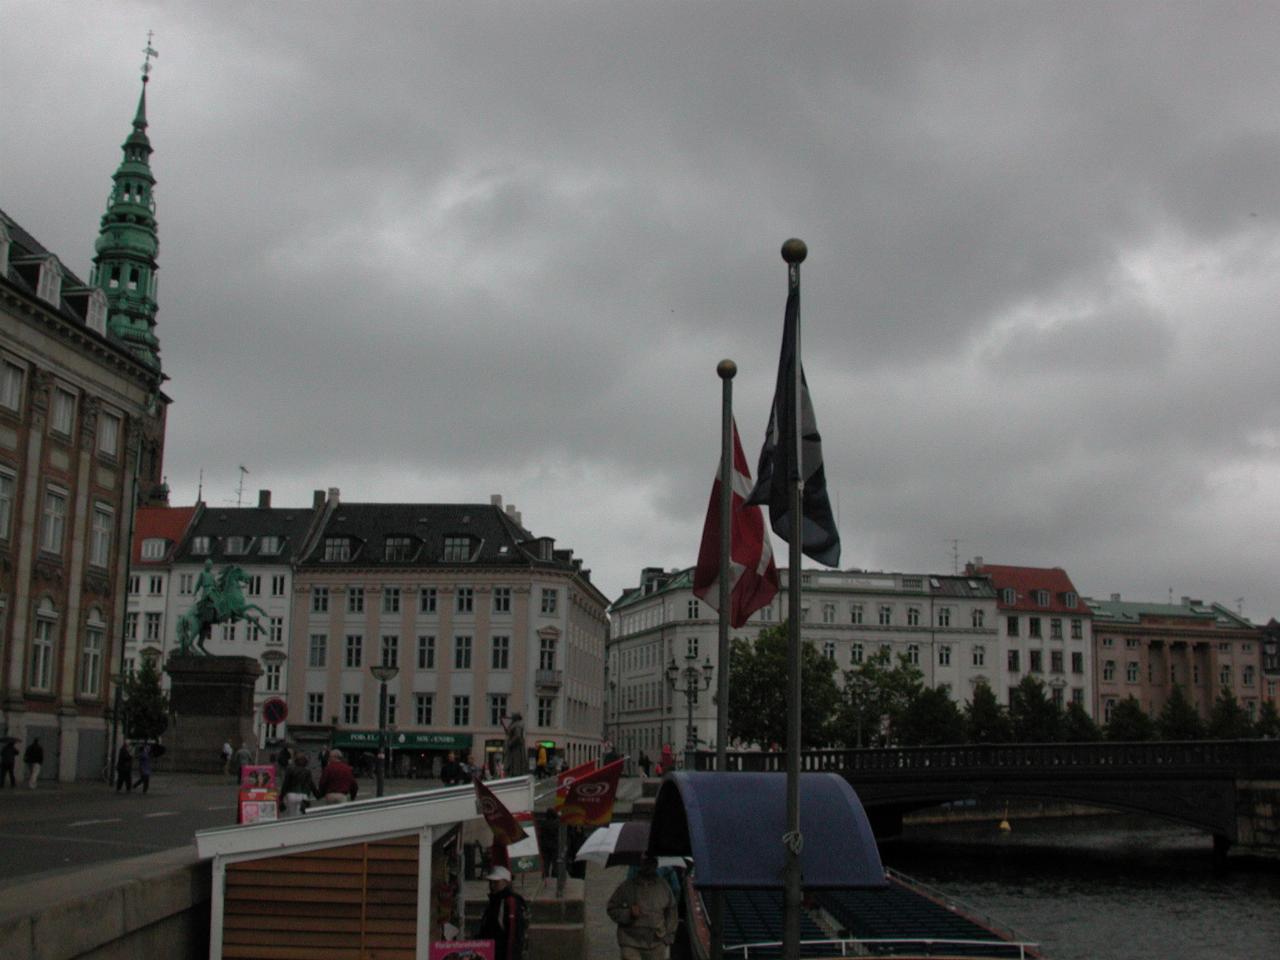 KPLU Viking Jazz: Statue of St. Absalon, founder of Copenhagen in Højbro Plads, seen from tour boat landing